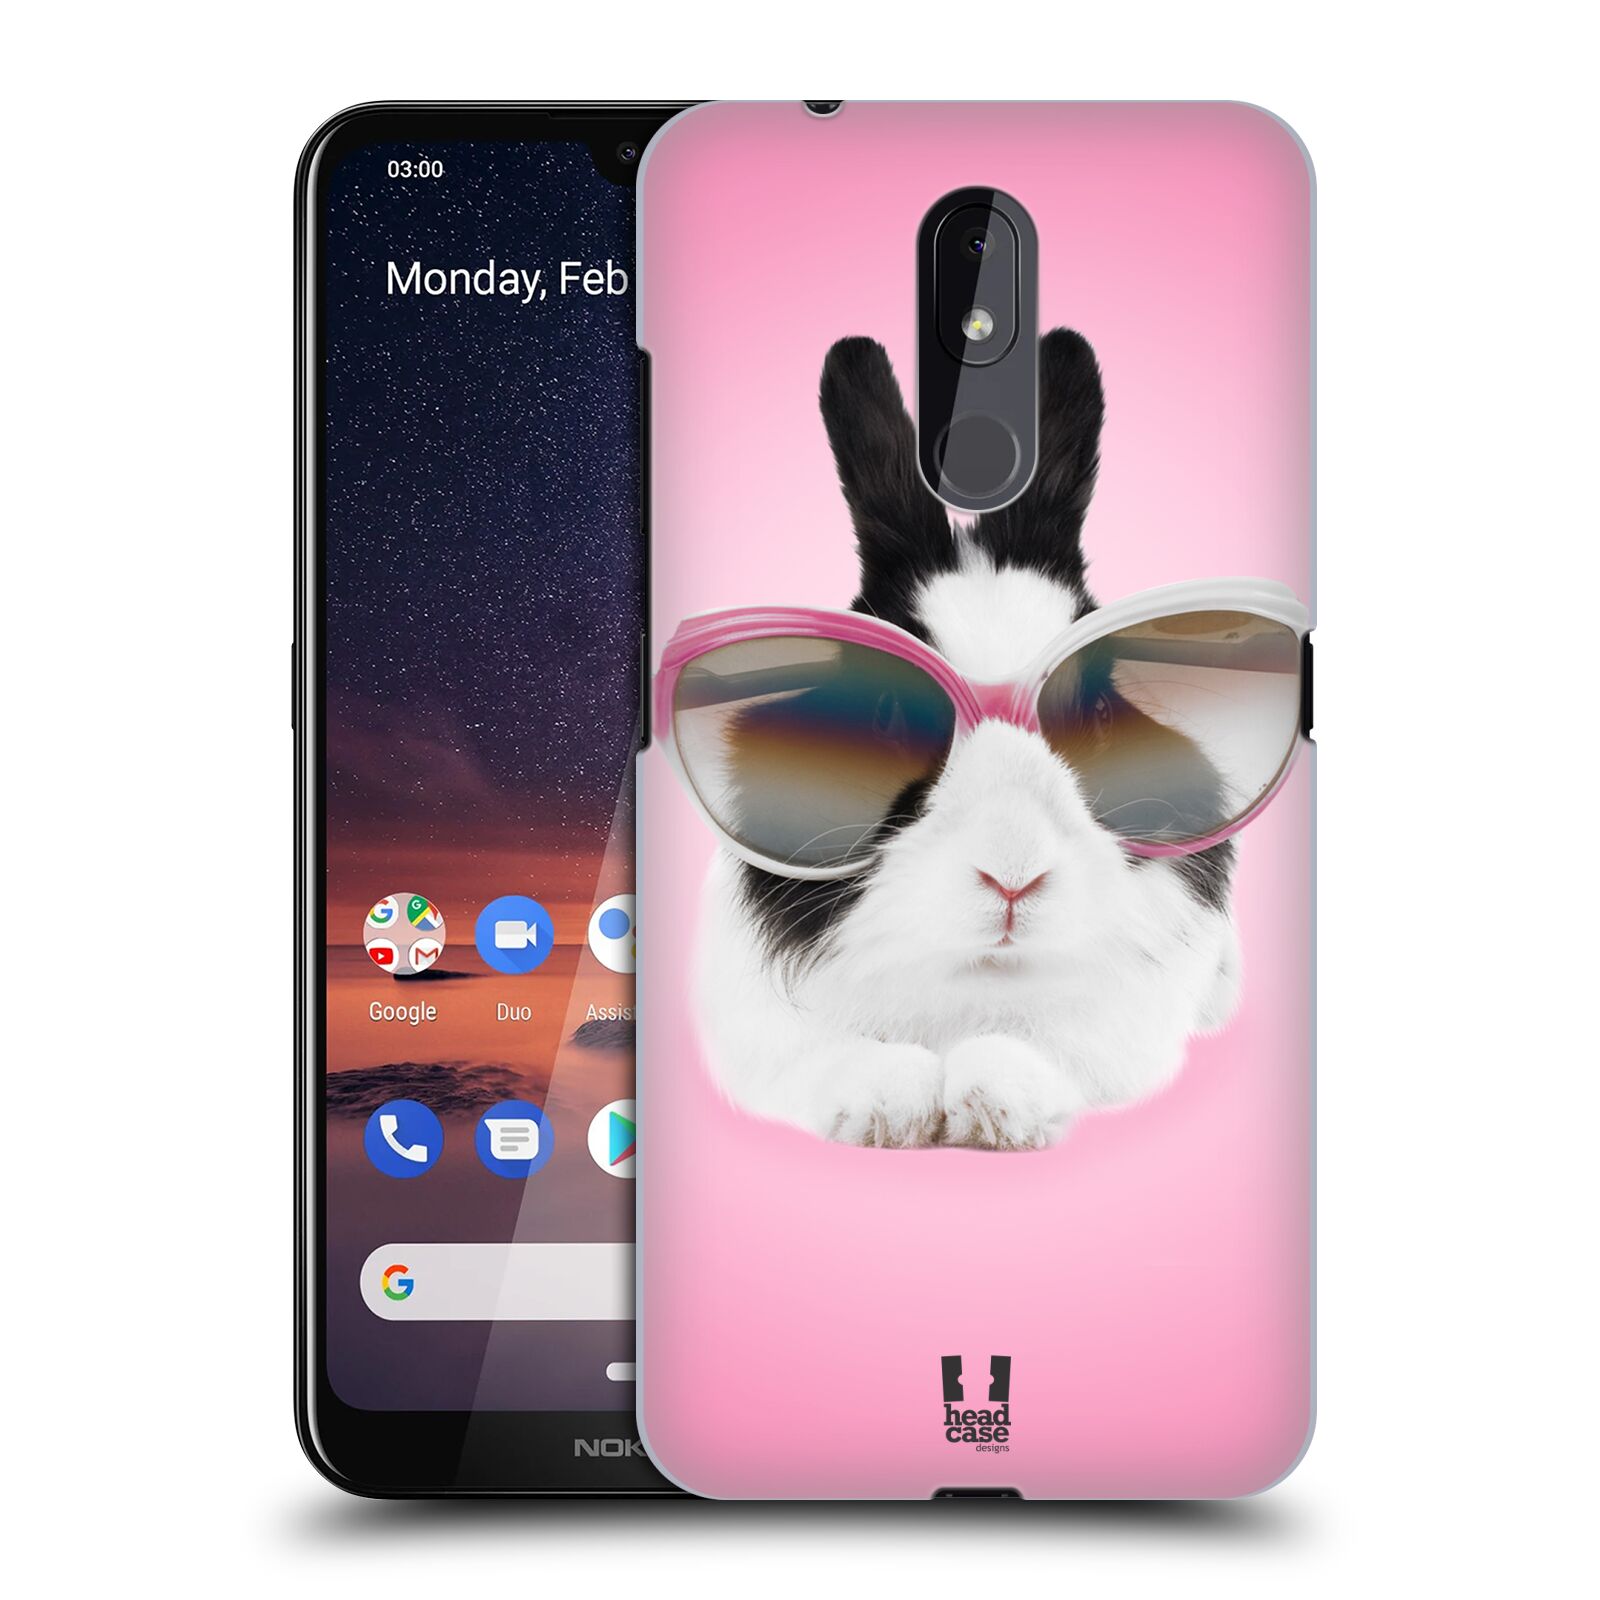 Pouzdro na mobil Nokia 3.2 - HEAD CASE - vzor Legrační zvířátka roztomilý králíček s brýlemi růžová